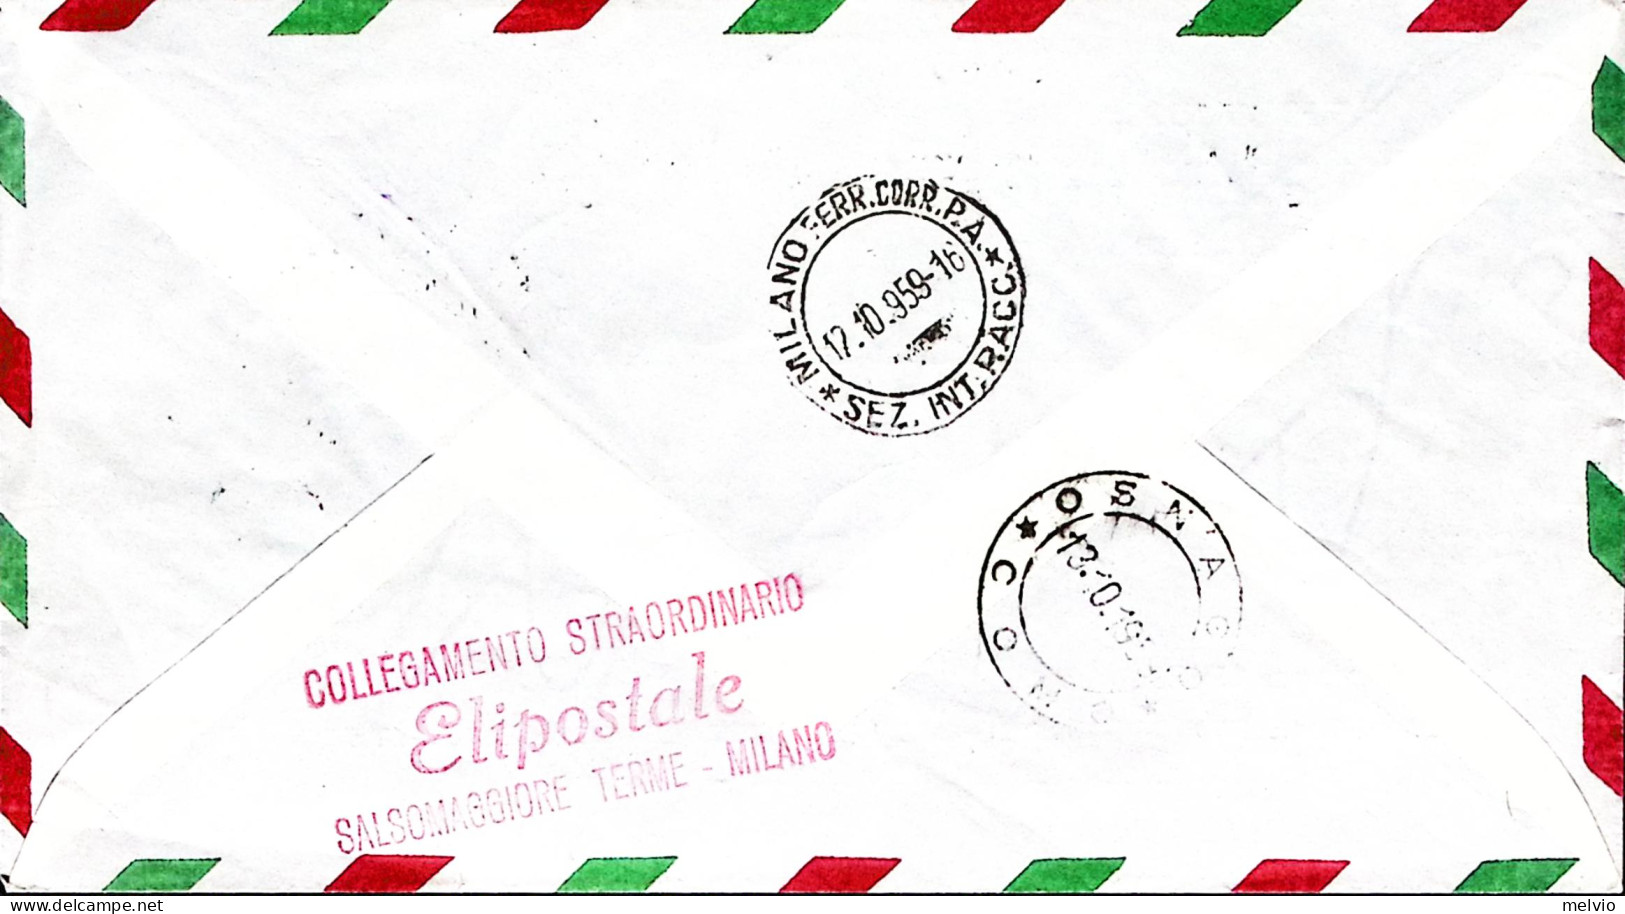 1959-Esperimento Collegamento Postale Con Elicottero Salsomaggiore-Milano (12.10 - Posta Aerea